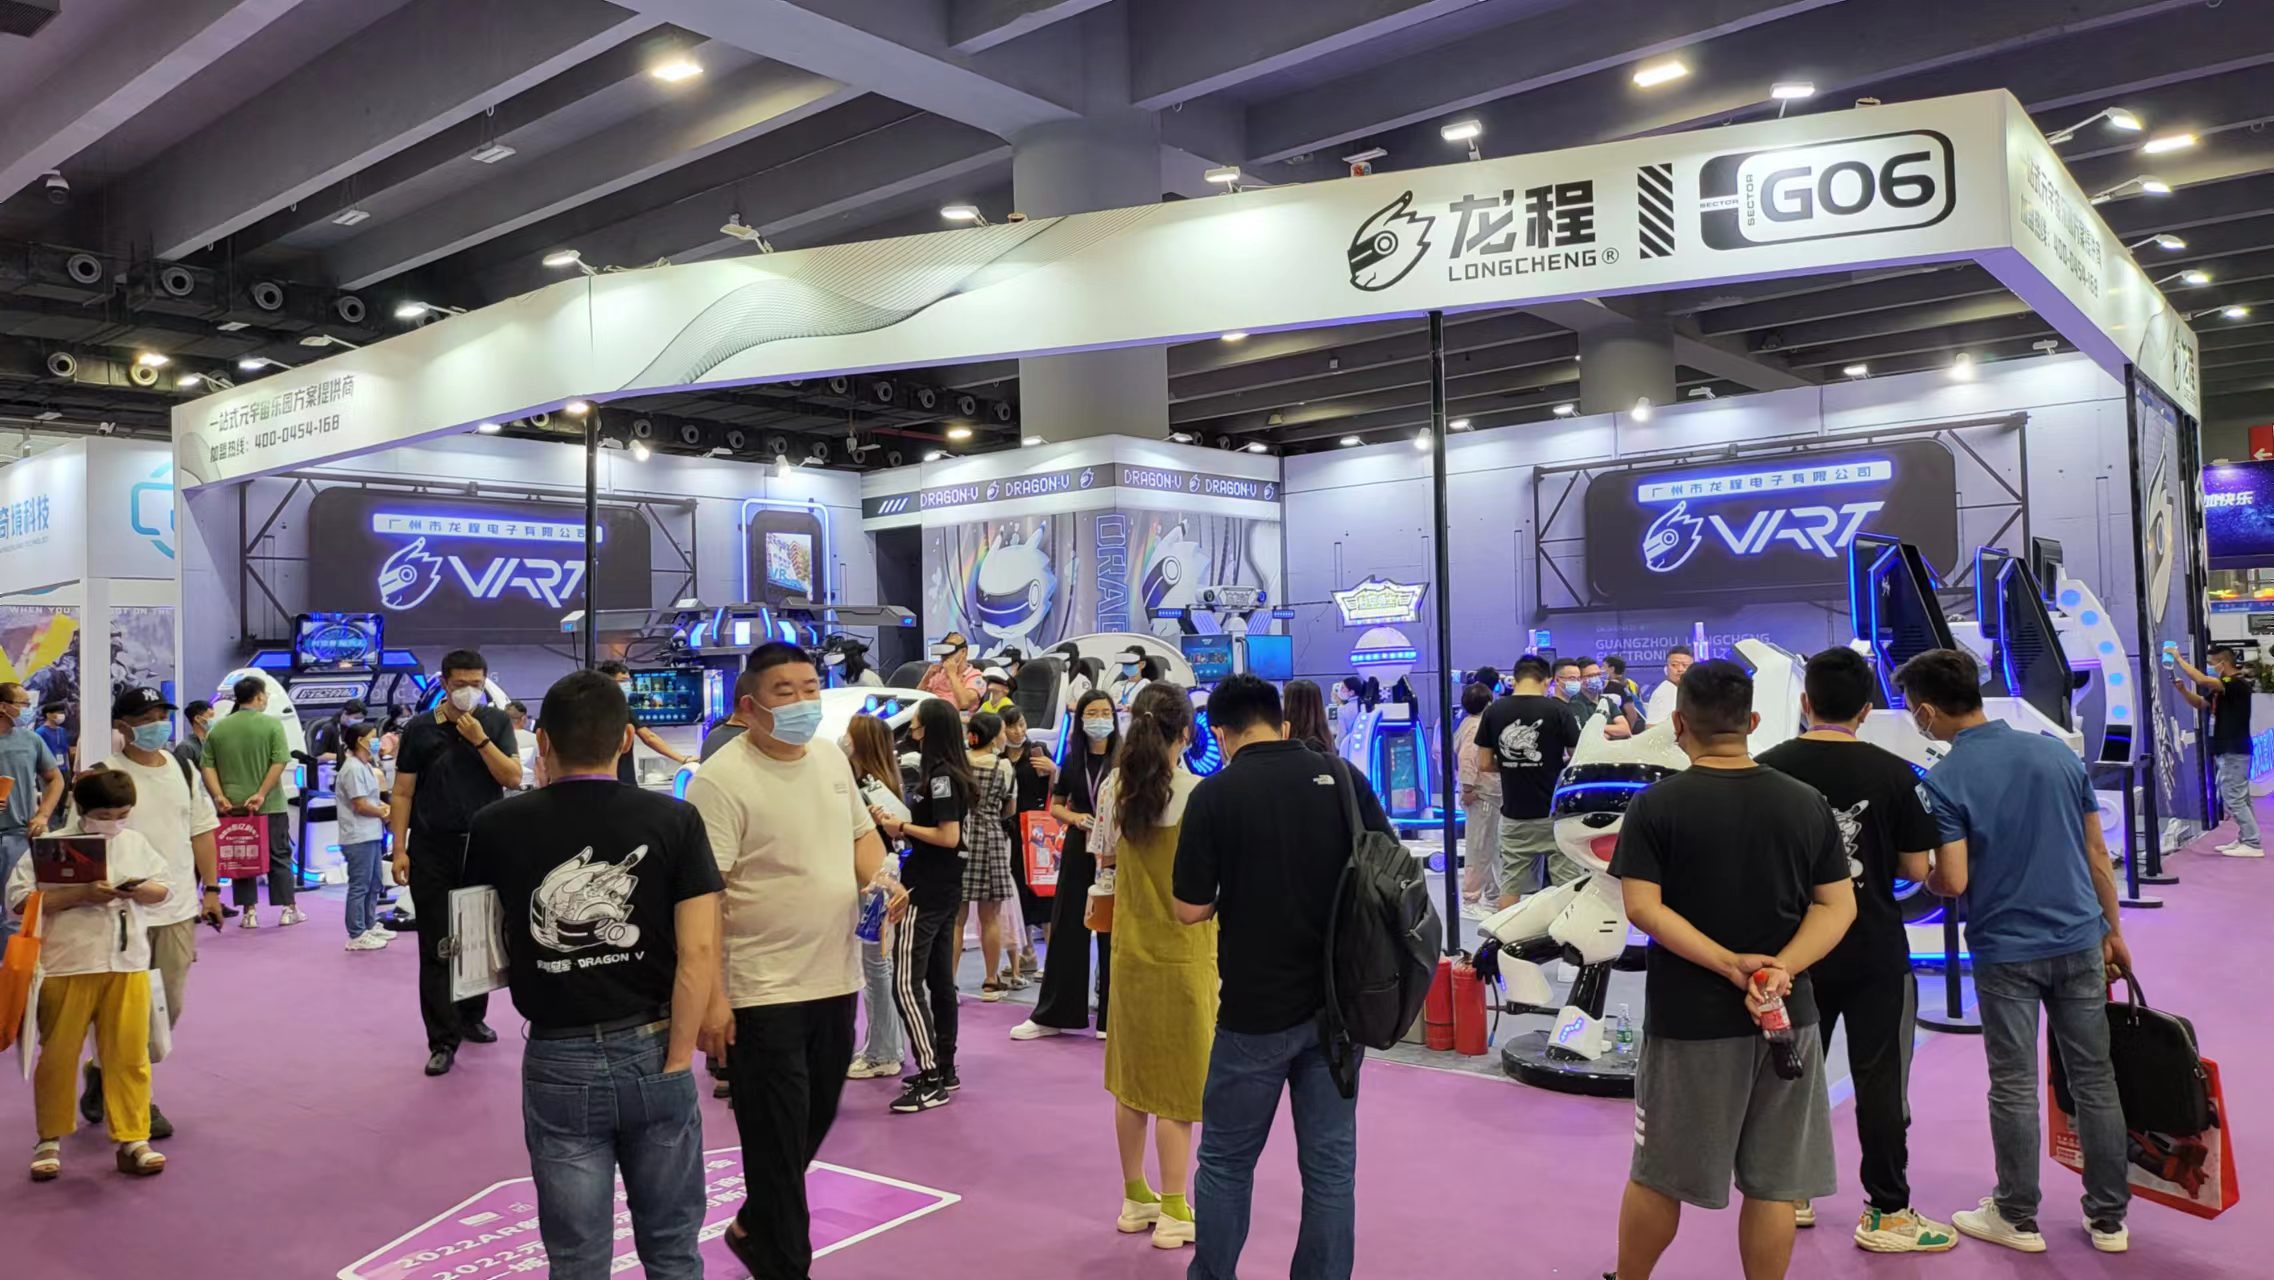 VART VR |La cabina espositiva G06 di Guangzhou Metaverse è davvero popolare